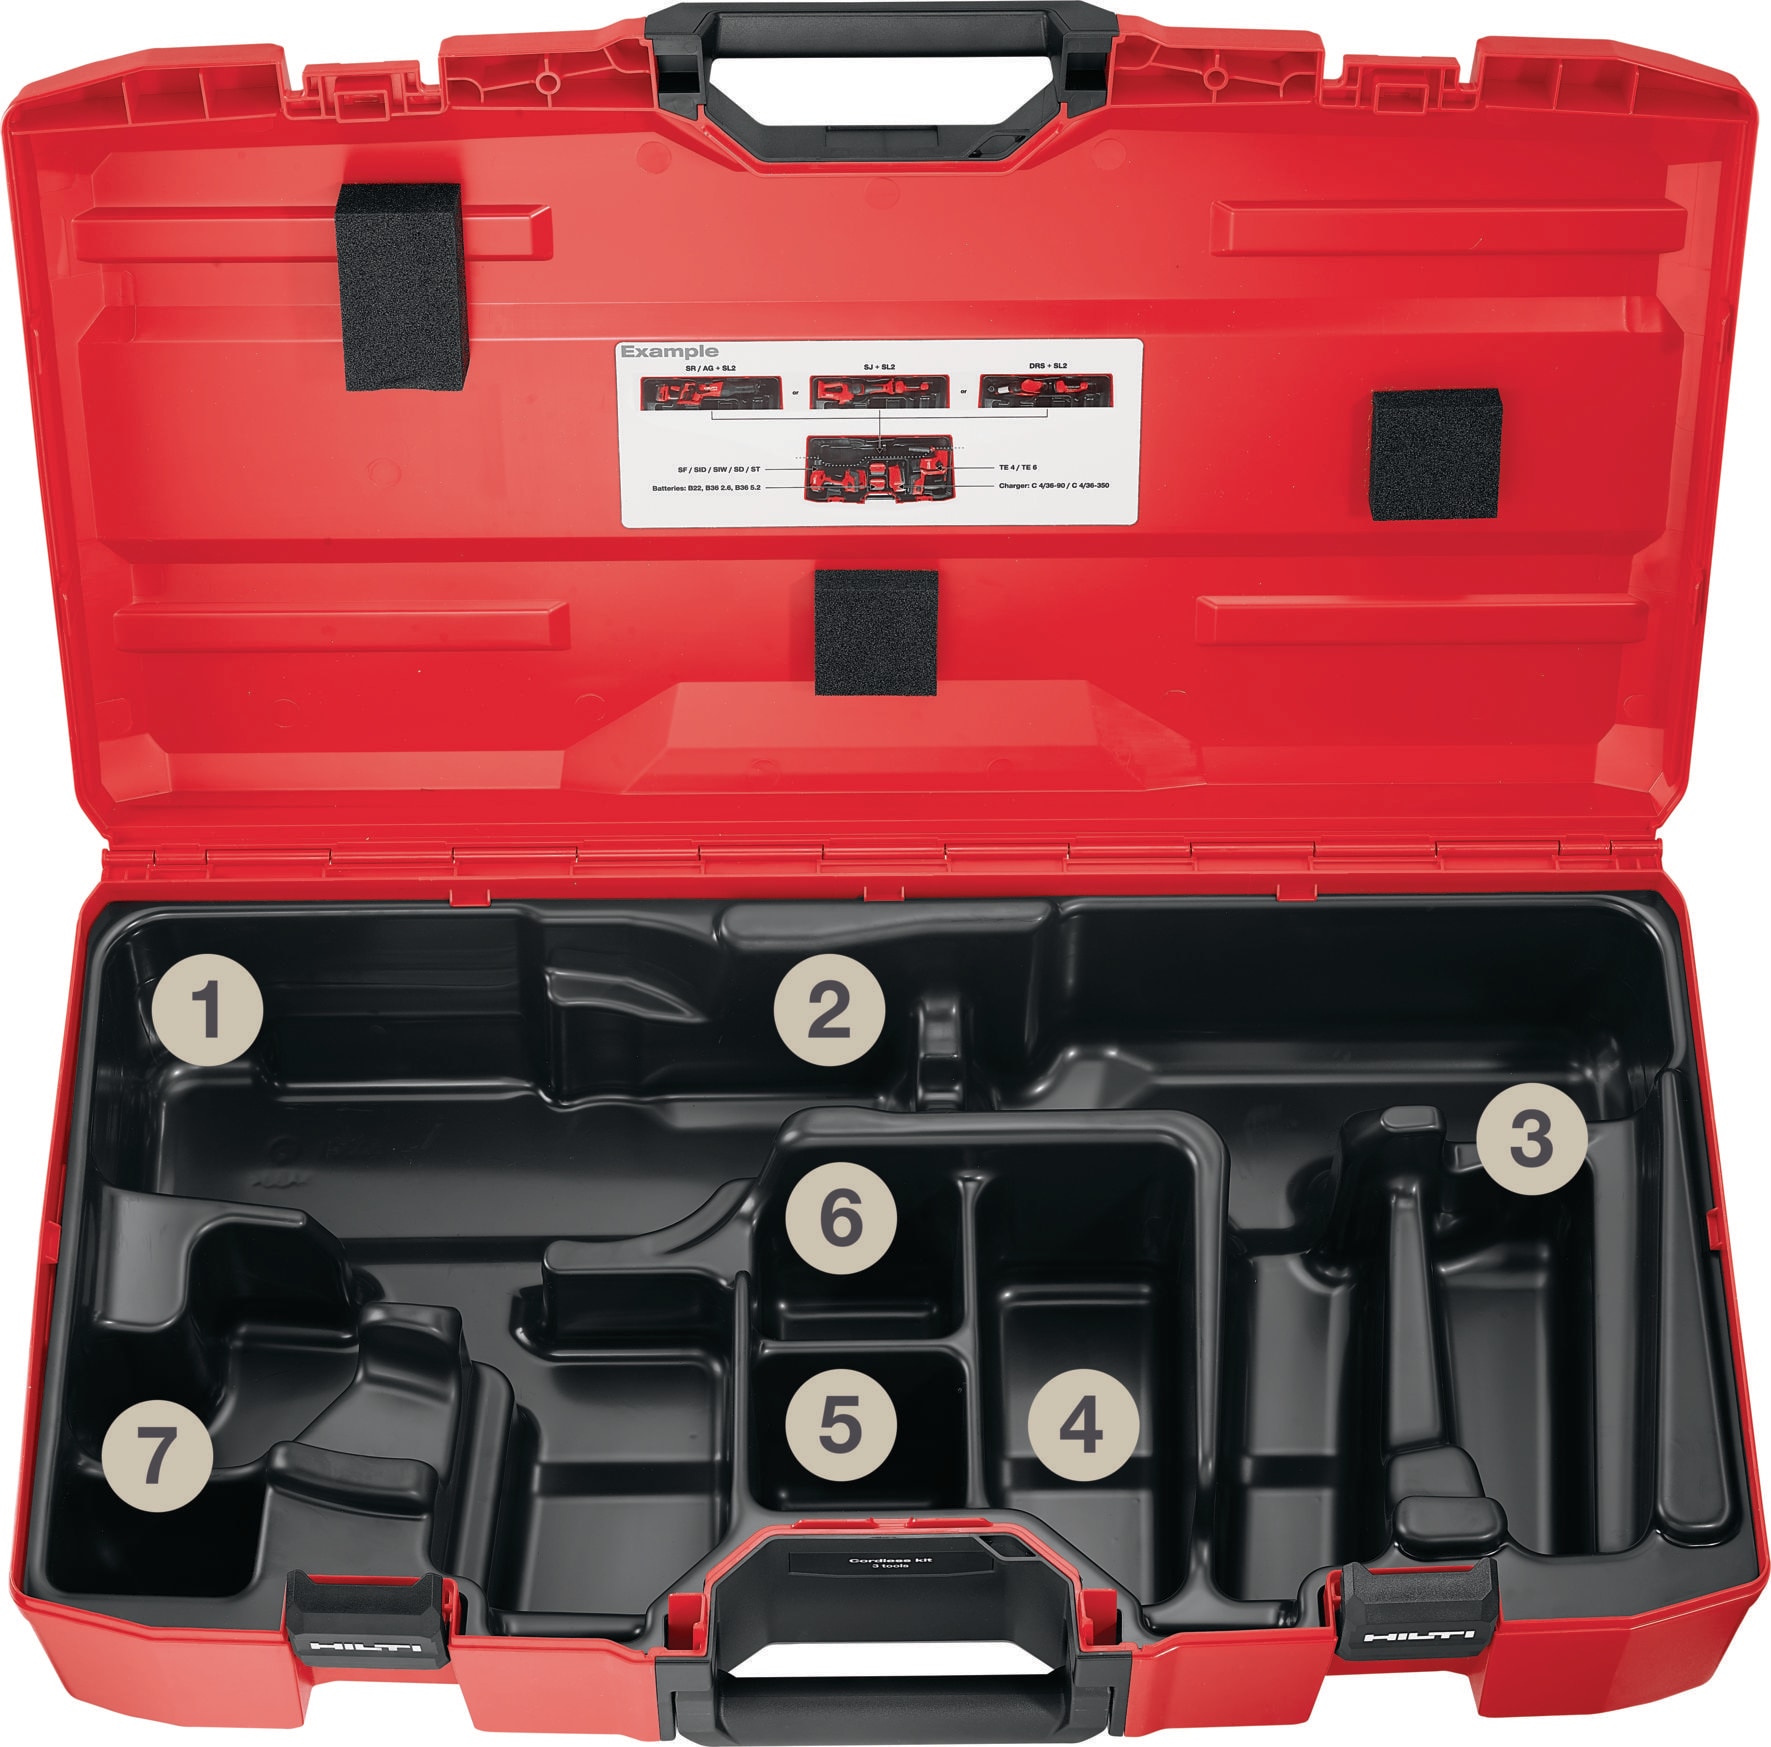 Combinaciones de 3 herramientas a batería - Kits de 3 herramientas a batería  - Hilti Española